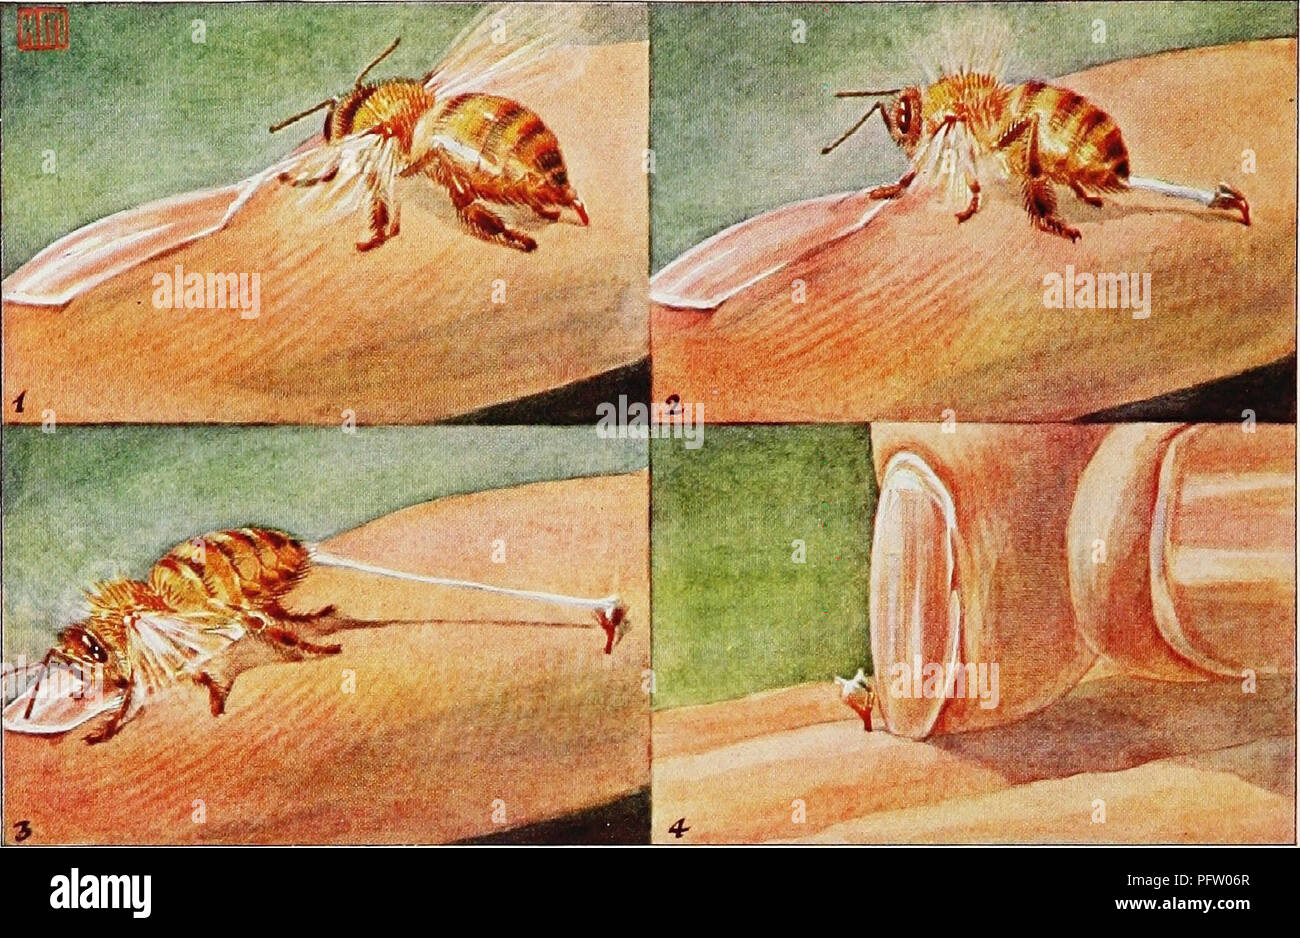 . [Articoli su uccelli da National Geographic Magazine]. Gli uccelli. Il National Geographic Magazine. Un pungiglione è peggio per lo STINGER rispetto il pungo la bee inserisce il suo piccolo arpione in tlie carne (1) così saldamente tliat quando si tenta di ritirarla (2 e 3), la lancia viene separata dal suo corpo, strappando i suoi delicati tessuti e uccidere i Bee. Dopo una punture d api, raschiare la battendo ancora stinger (4); tirandola costringe più veleno nella ferita.. Si prega di notare che queste immagini vengono estratte dalla pagina sottoposta a scansione di immagini che possono essere state migliorate digitalmente per la leggibilità - colorazione e appeara Foto Stock